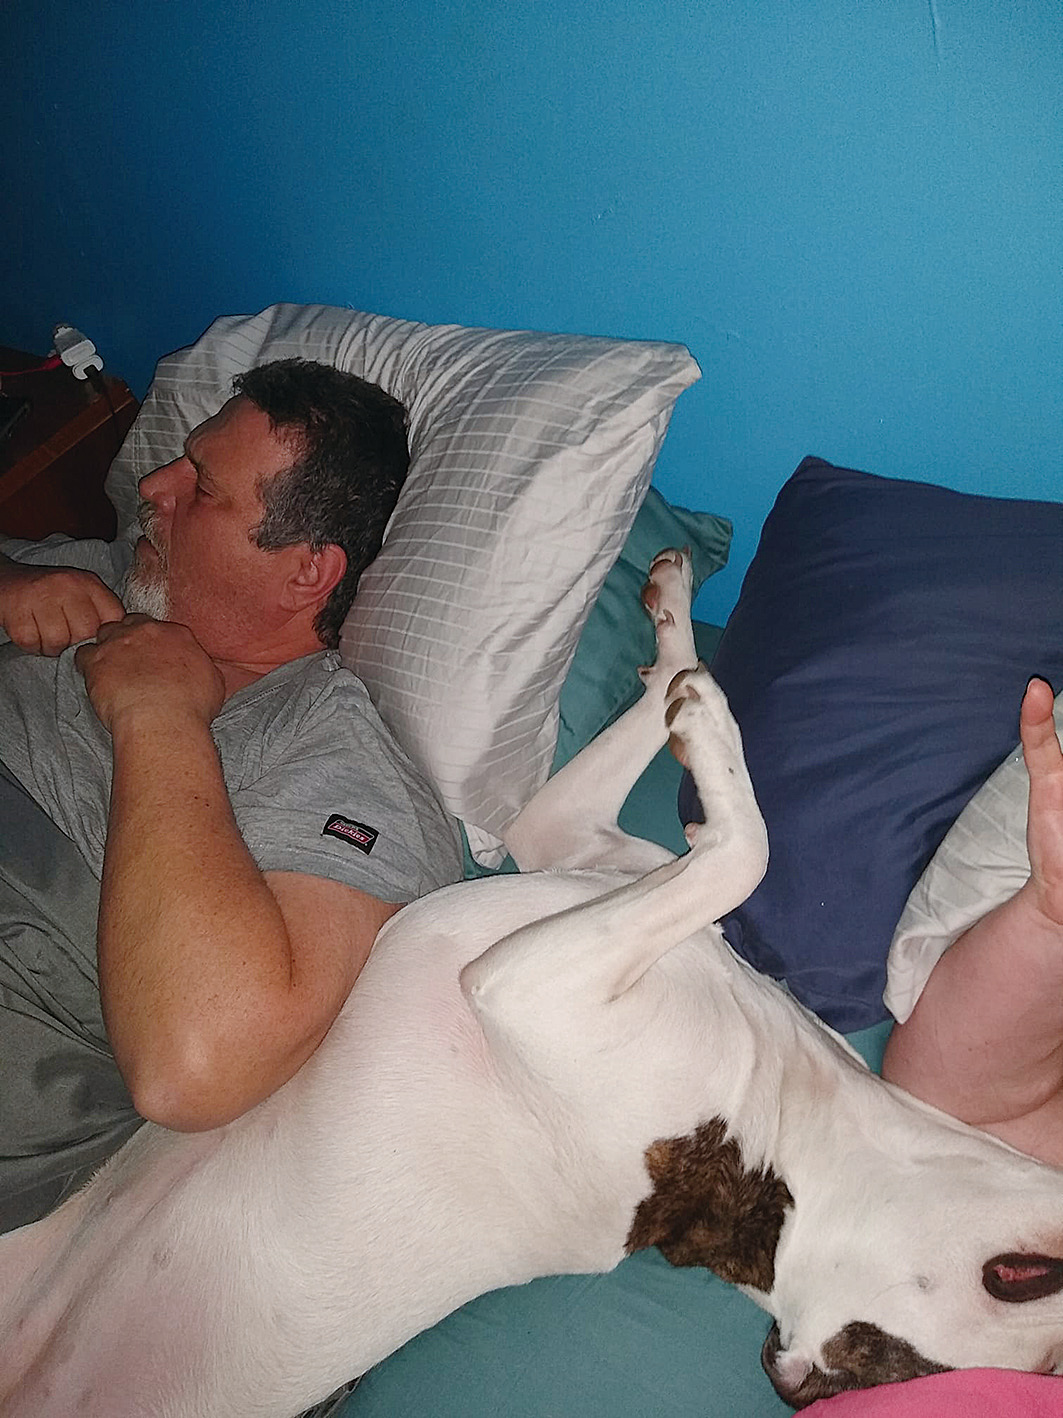 費利西亞的丈夫和愛犬查理同床而眠。查理睡覺的樣子十分搞怪。（Felicia Gillman Facebook）